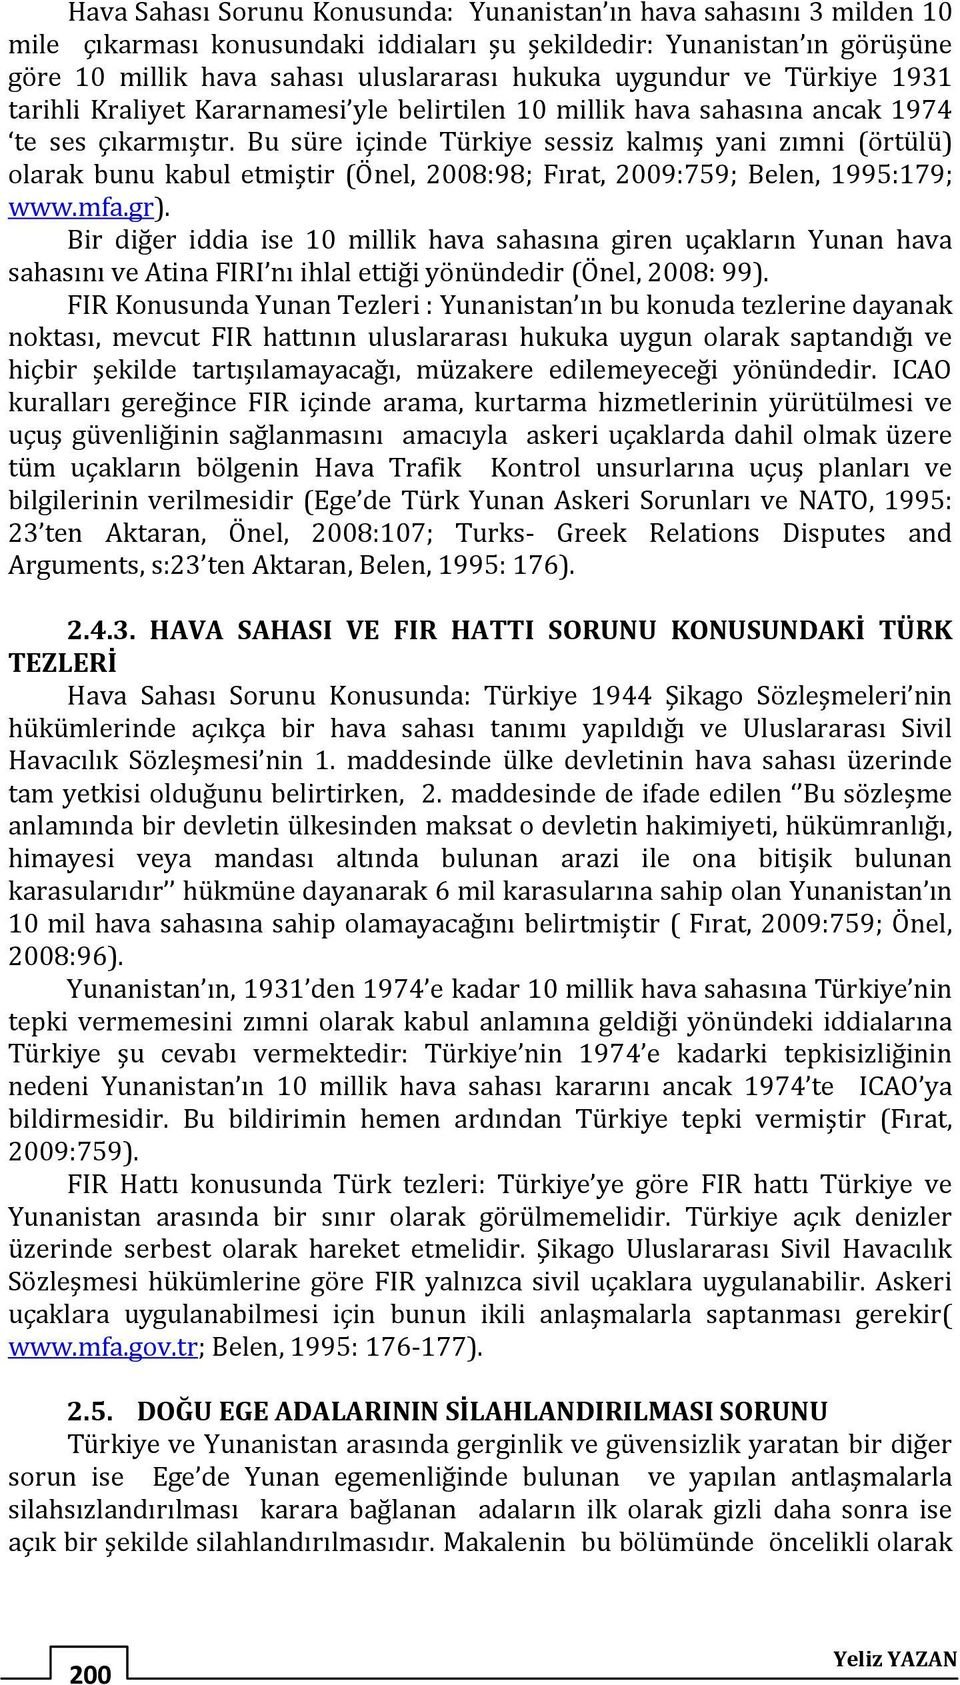 Bu süre içinde Türkiye sessiz kalmış yani zımni (örtülü) olarak bunu kabul etmiştir (Önel, 2008:98; Fırat, 2009:759; Belen, 1995:179; www.mfa.gr).